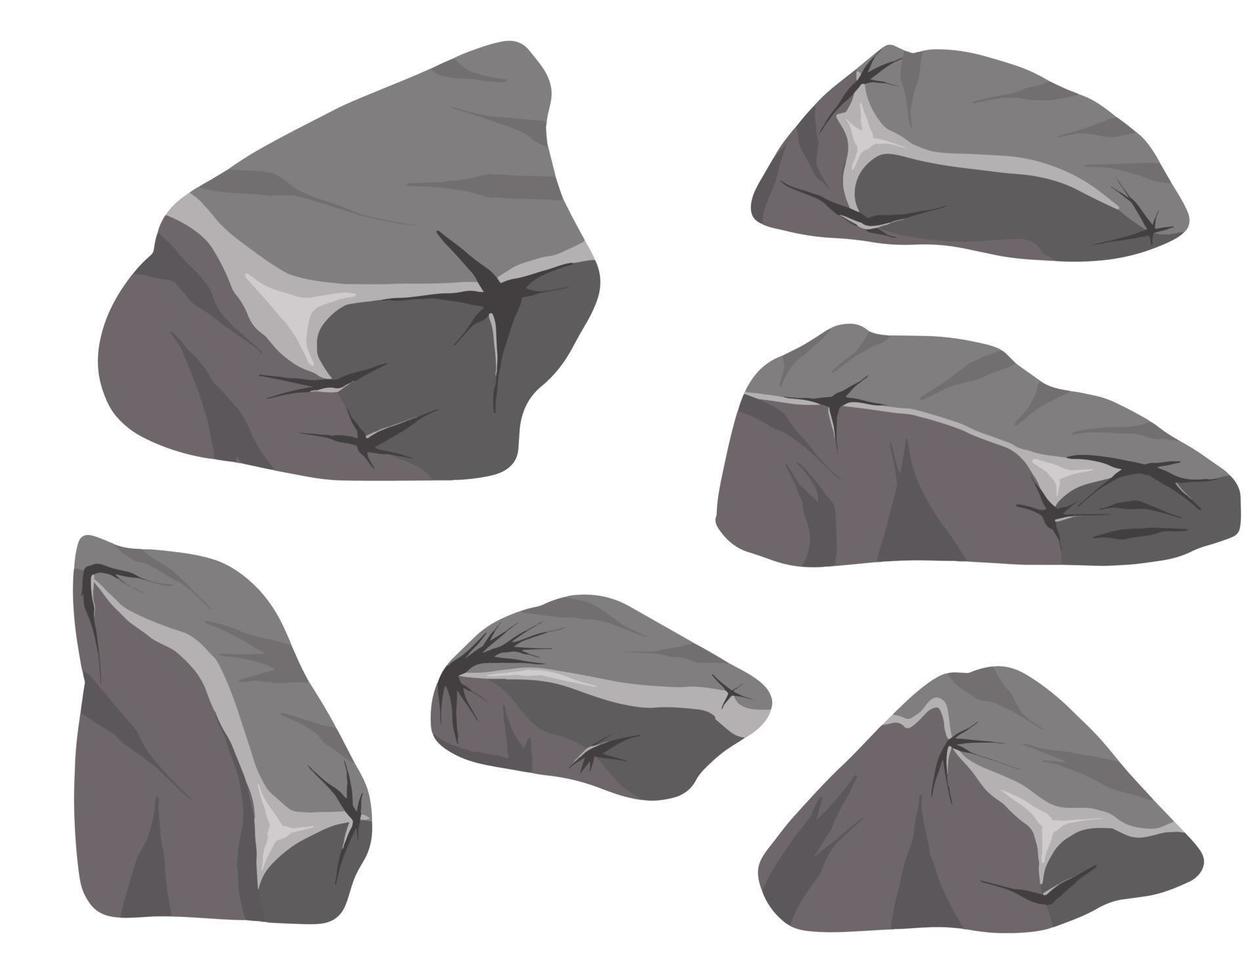 Vektorsatz Steine und Berge lokalisiert auf einem weißen Hintergrund. magische steine im 2d-stil für das spieldesign. vektor